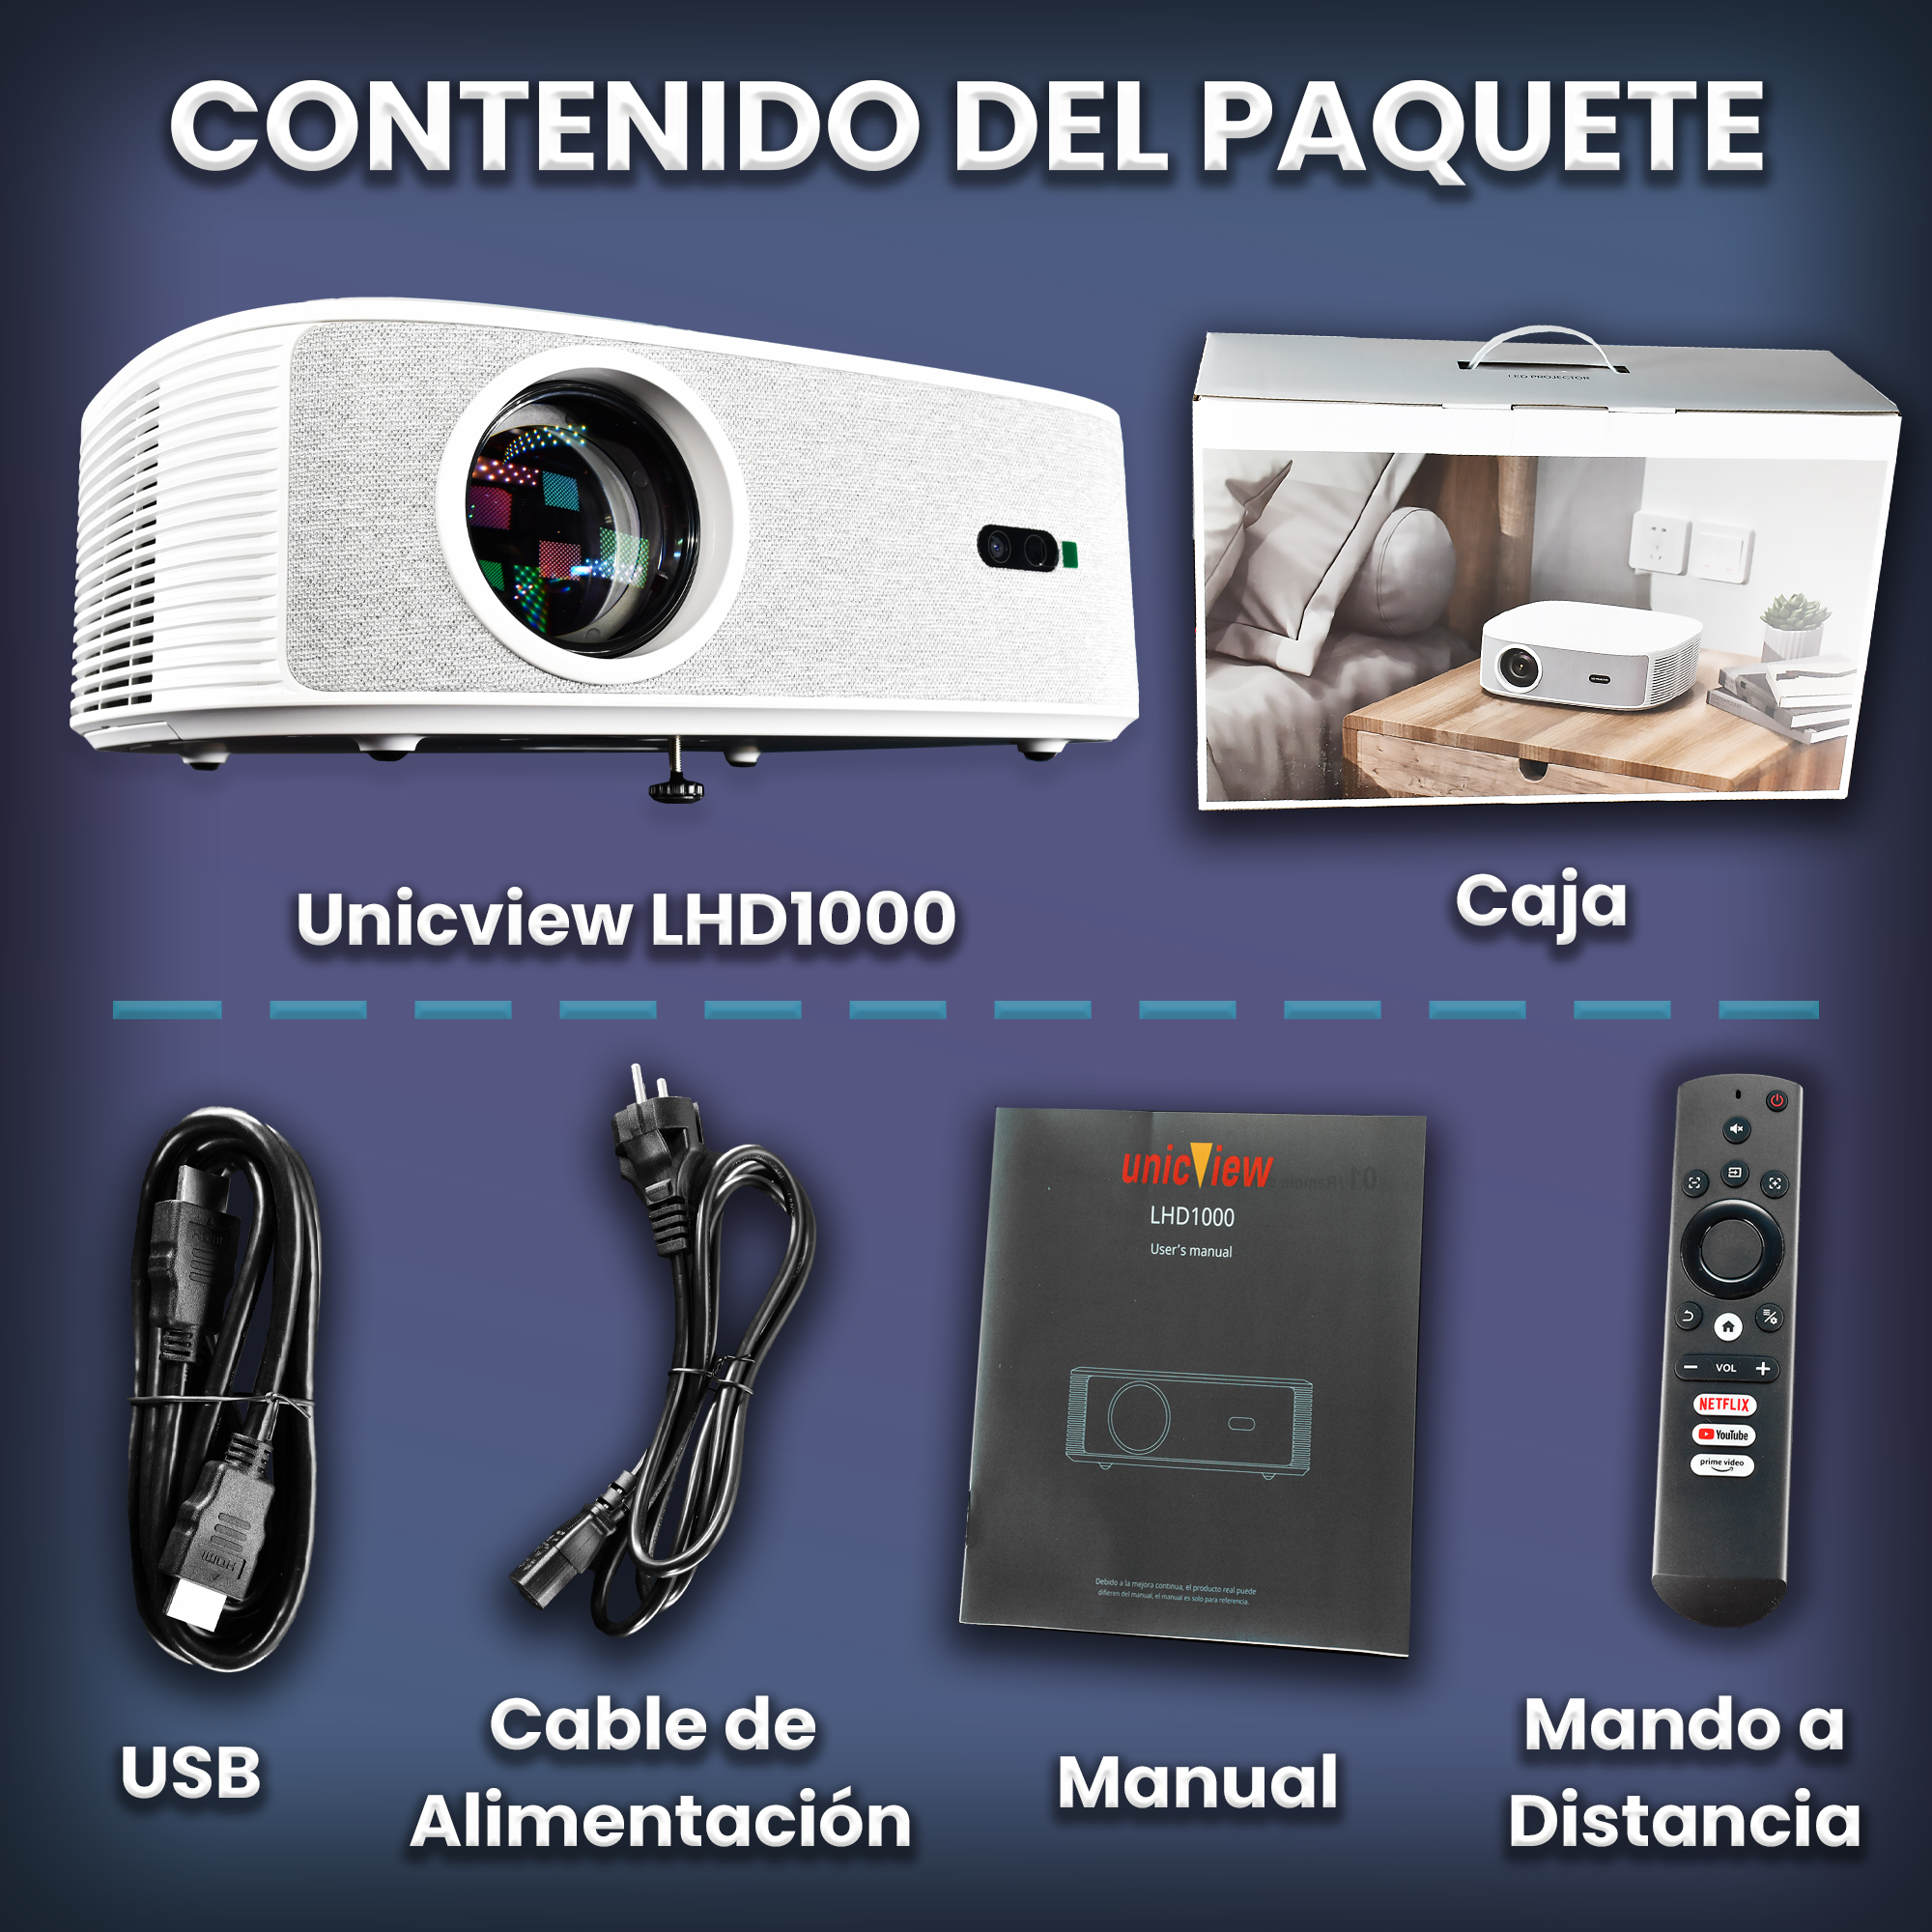 Unicview FHD1000 FULLHD (Wifi, Bluetooth, Silencioso) > ¿Qué modelo  necesito? > Peliculas, video juegos, tv